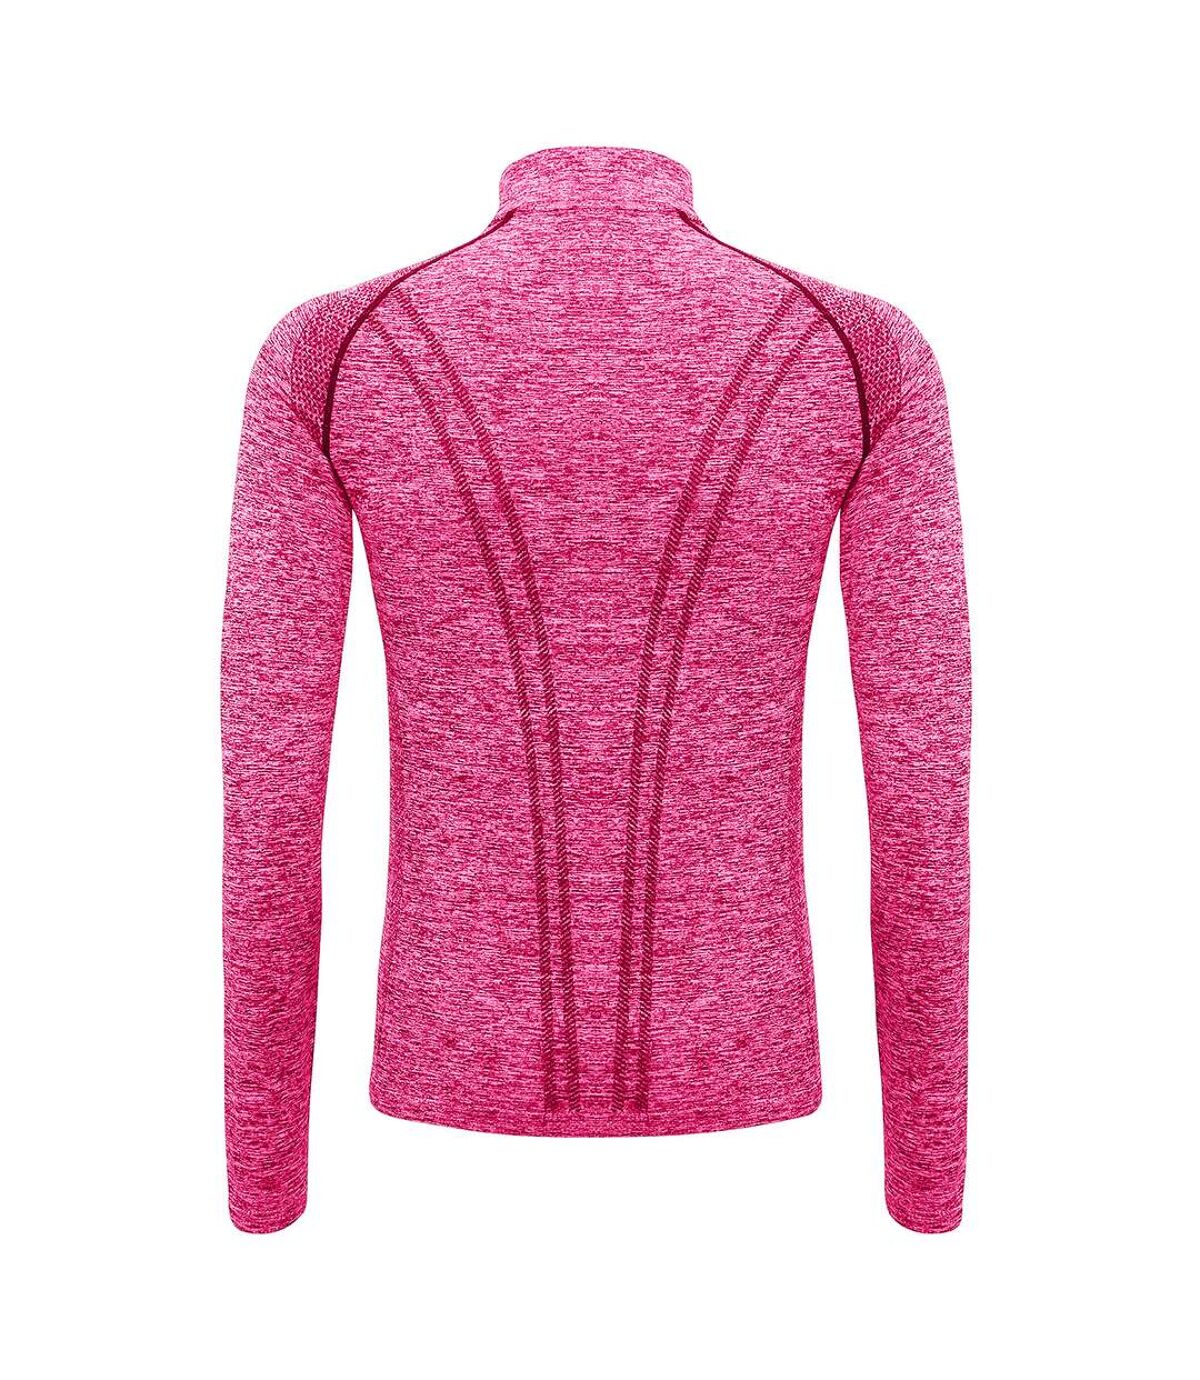 TriDri Womens/Ladies Seamless 3D Fit Multi Sport Performance Zip Top (Pink)